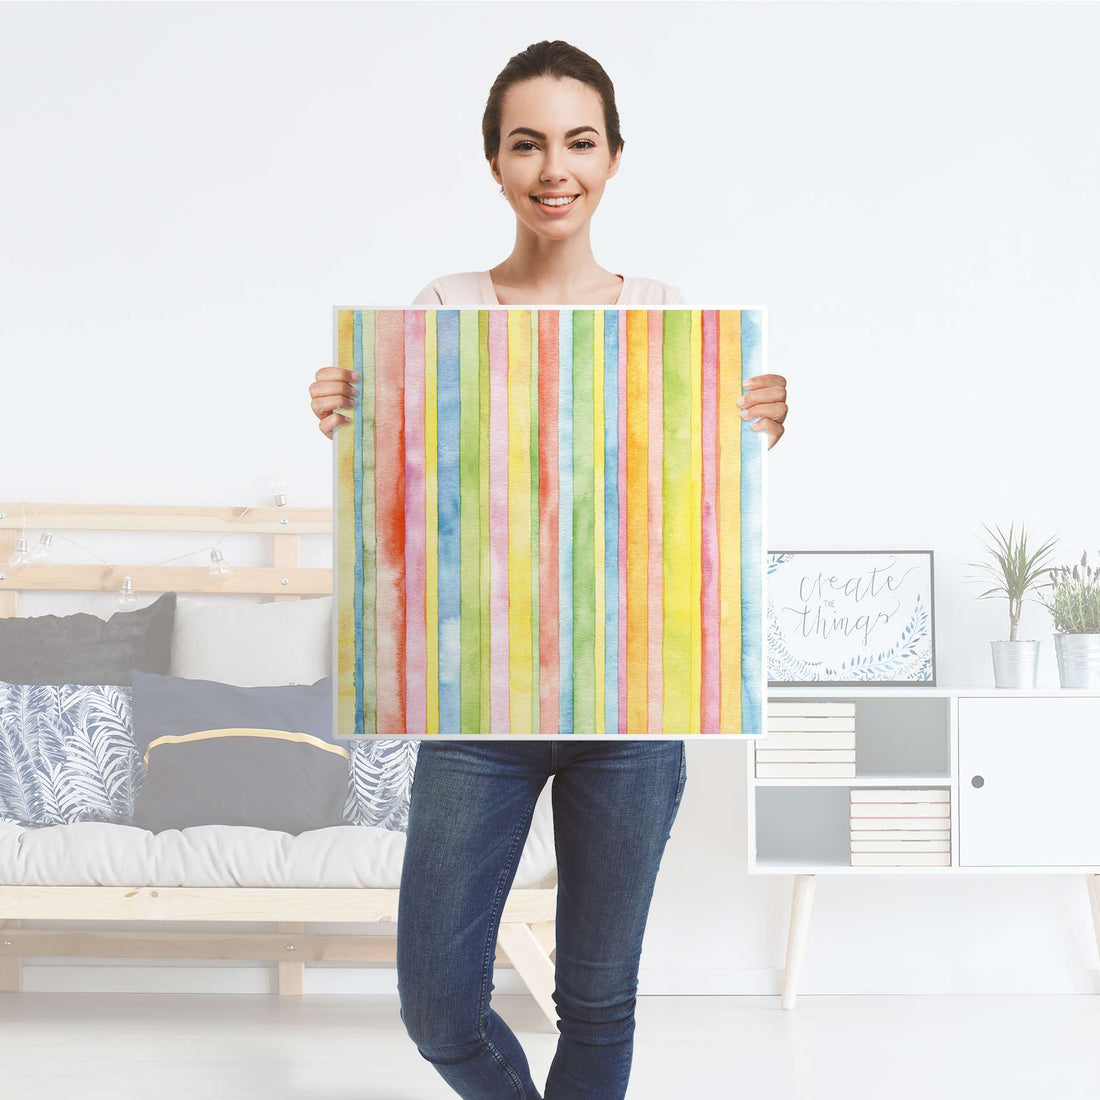 Möbel Klebefolie Watercolor Stripes - IKEA Hemnes Beistelltisch 55x55 cm - Folie